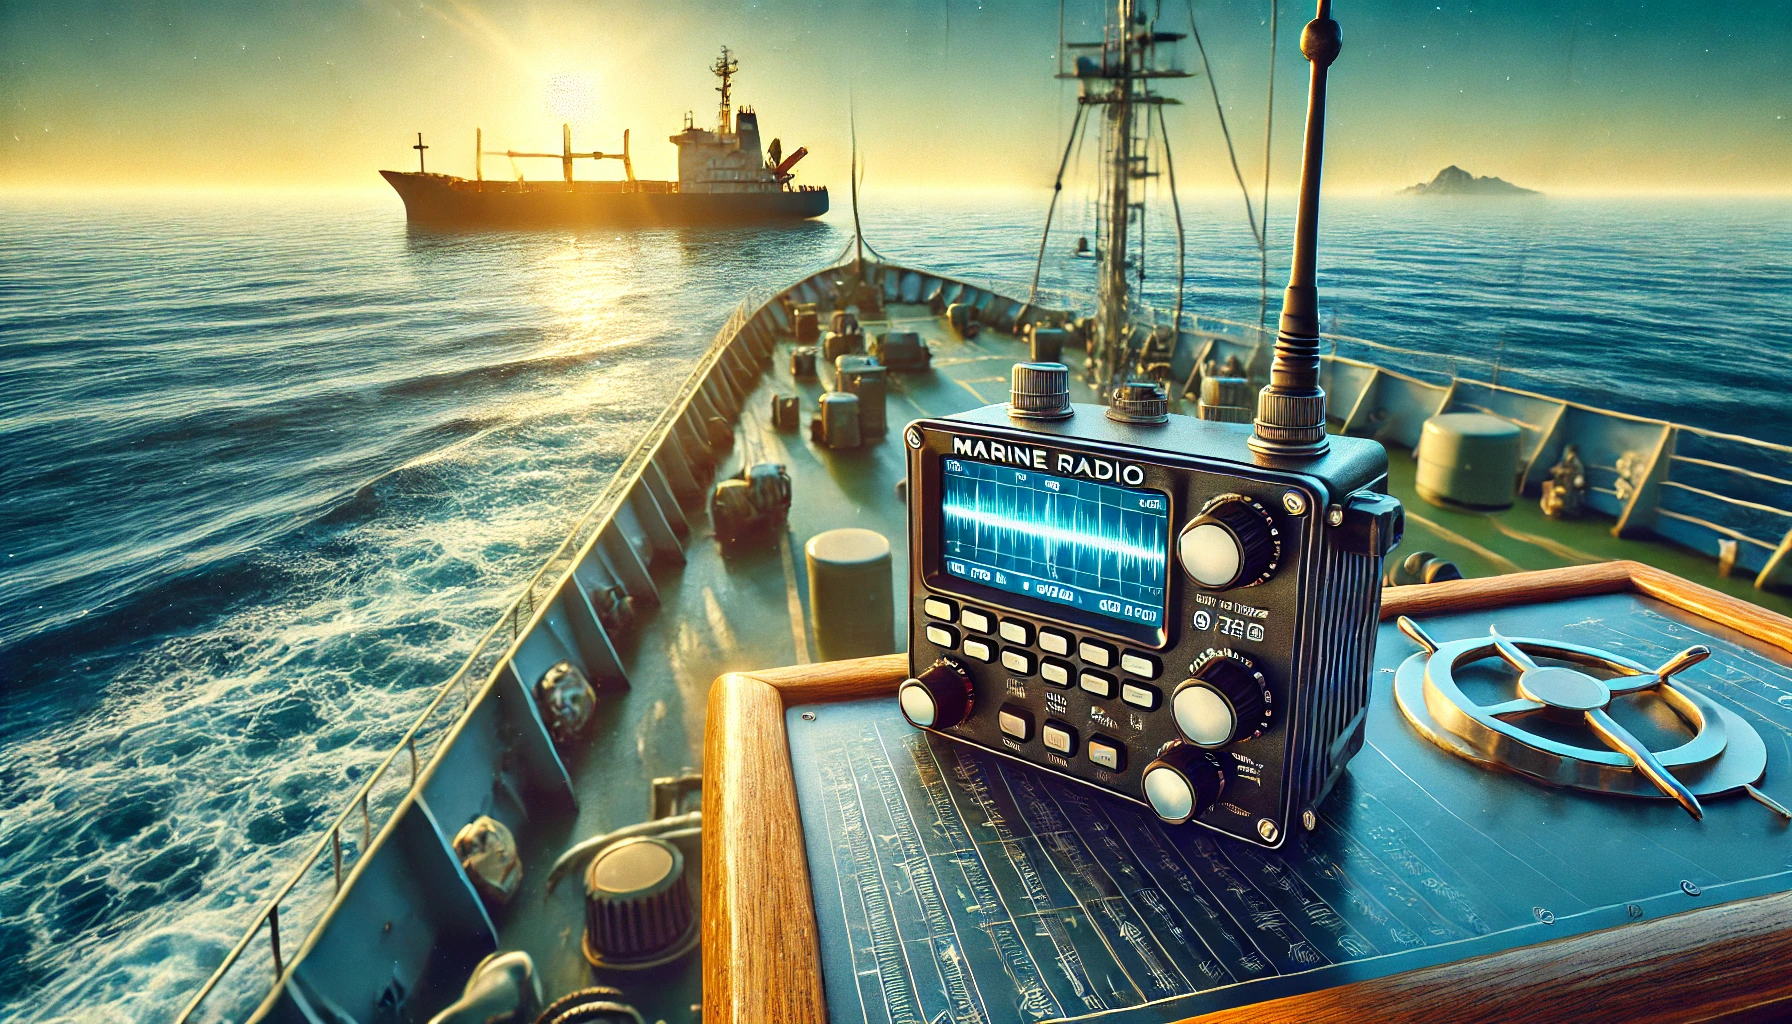 Marine Radio Devices